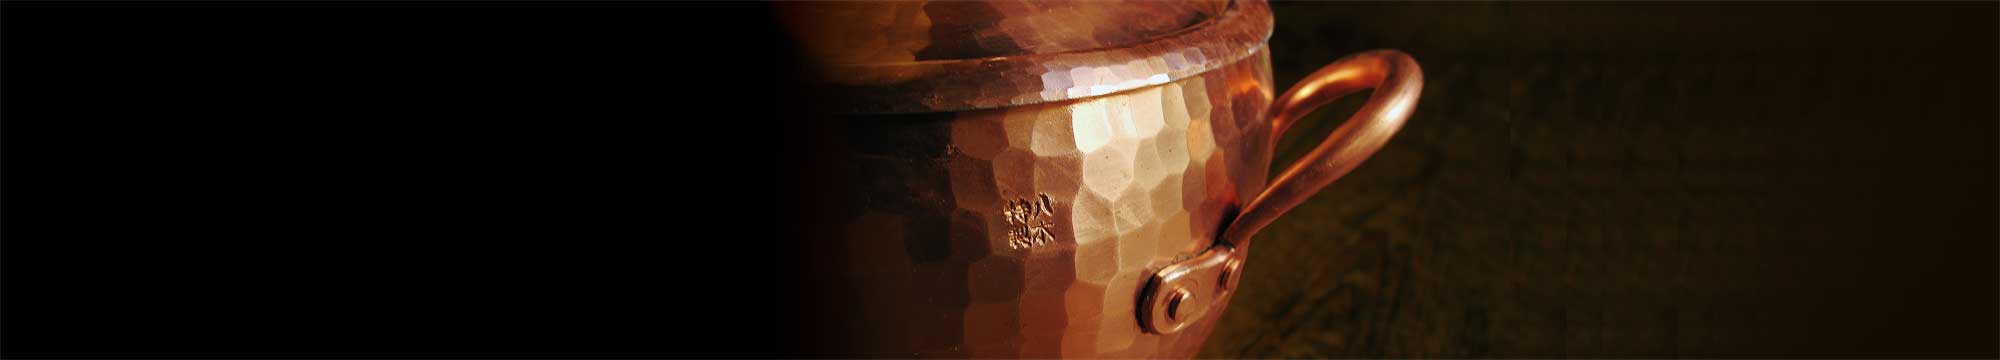 銅鍋の背景